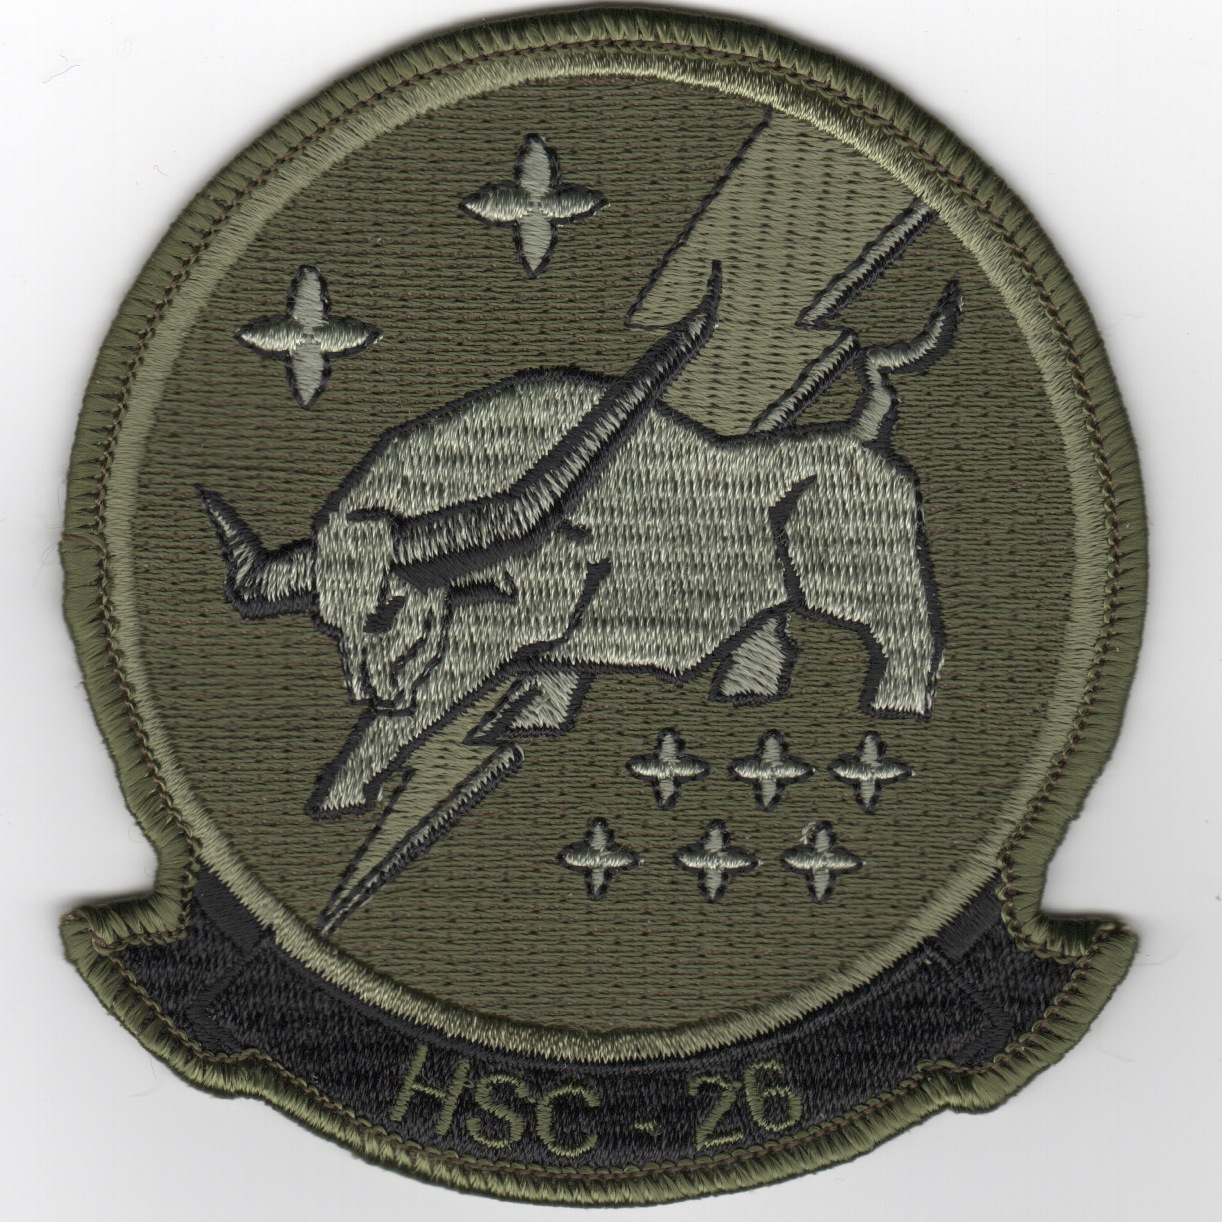 HSC-26 Squadron Patch (Subd)